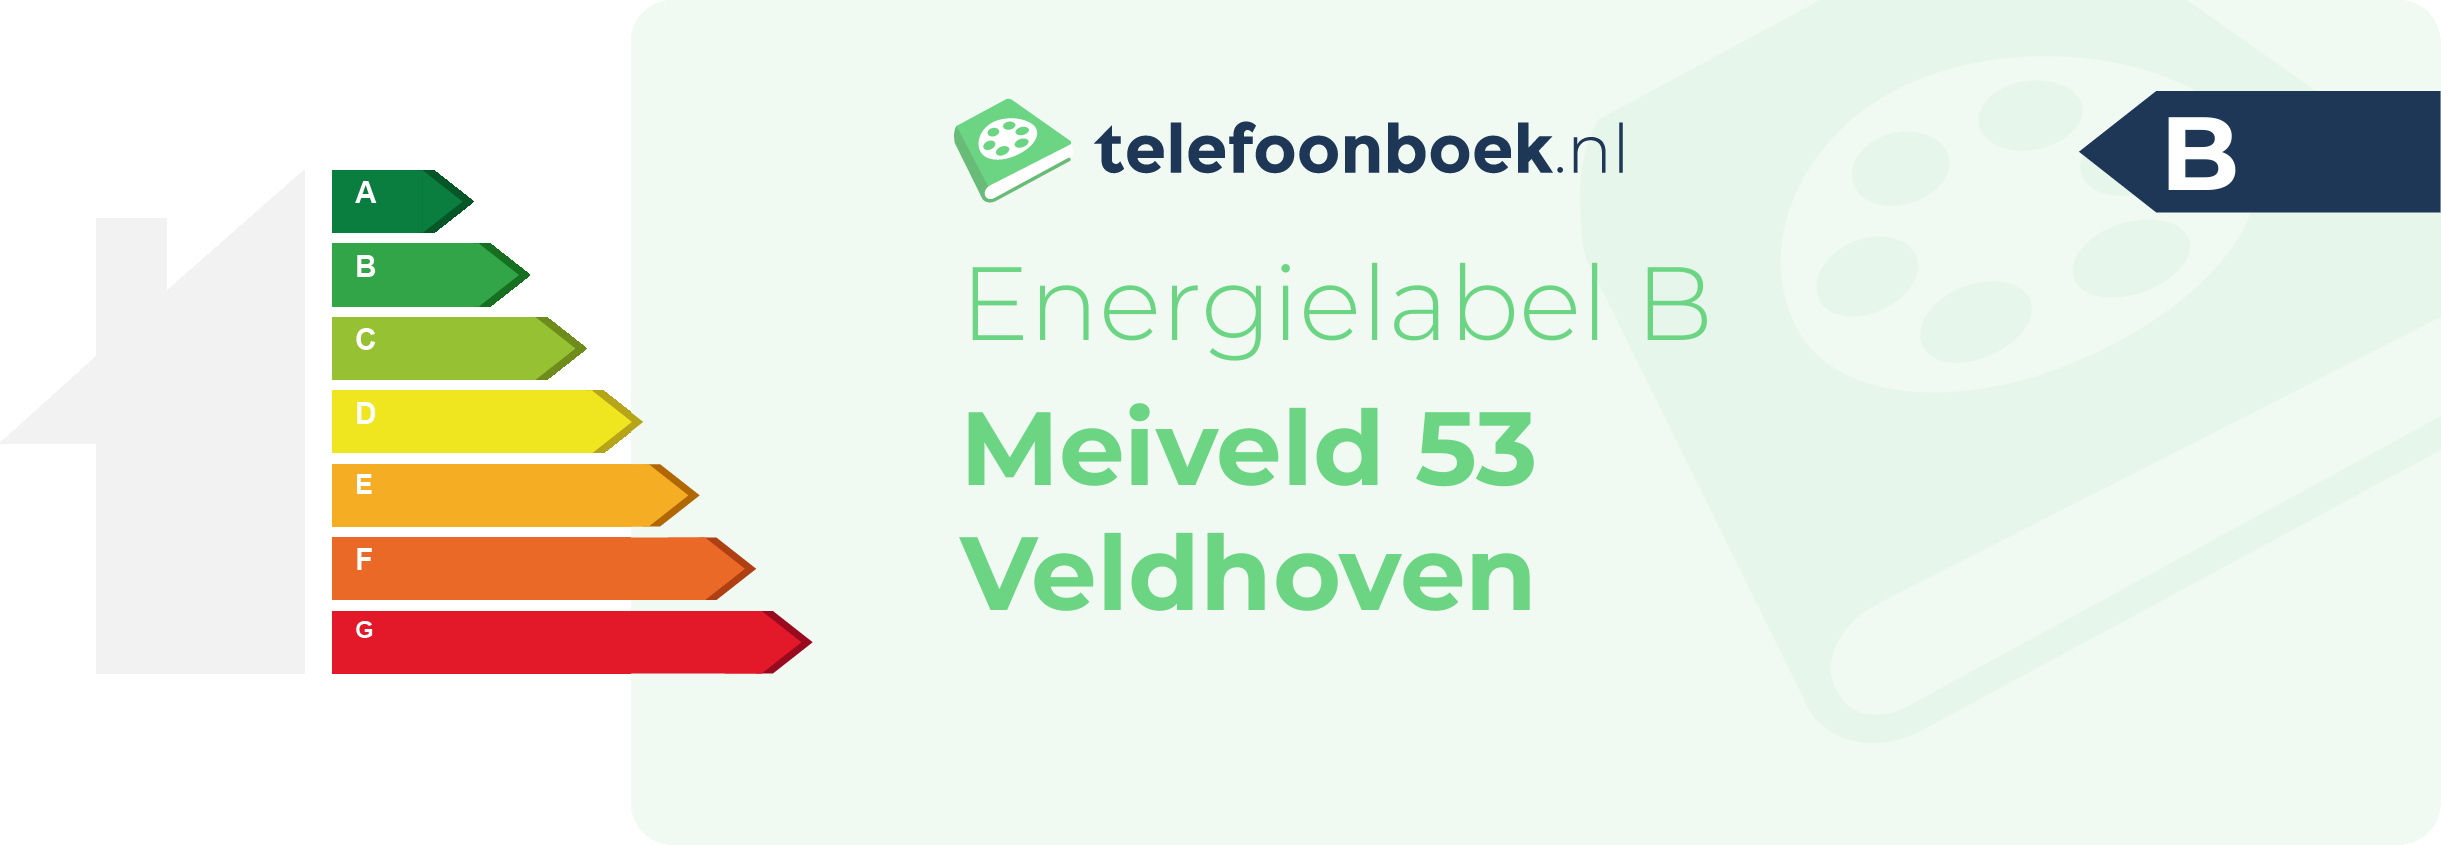 Energielabel Meiveld 53 Veldhoven